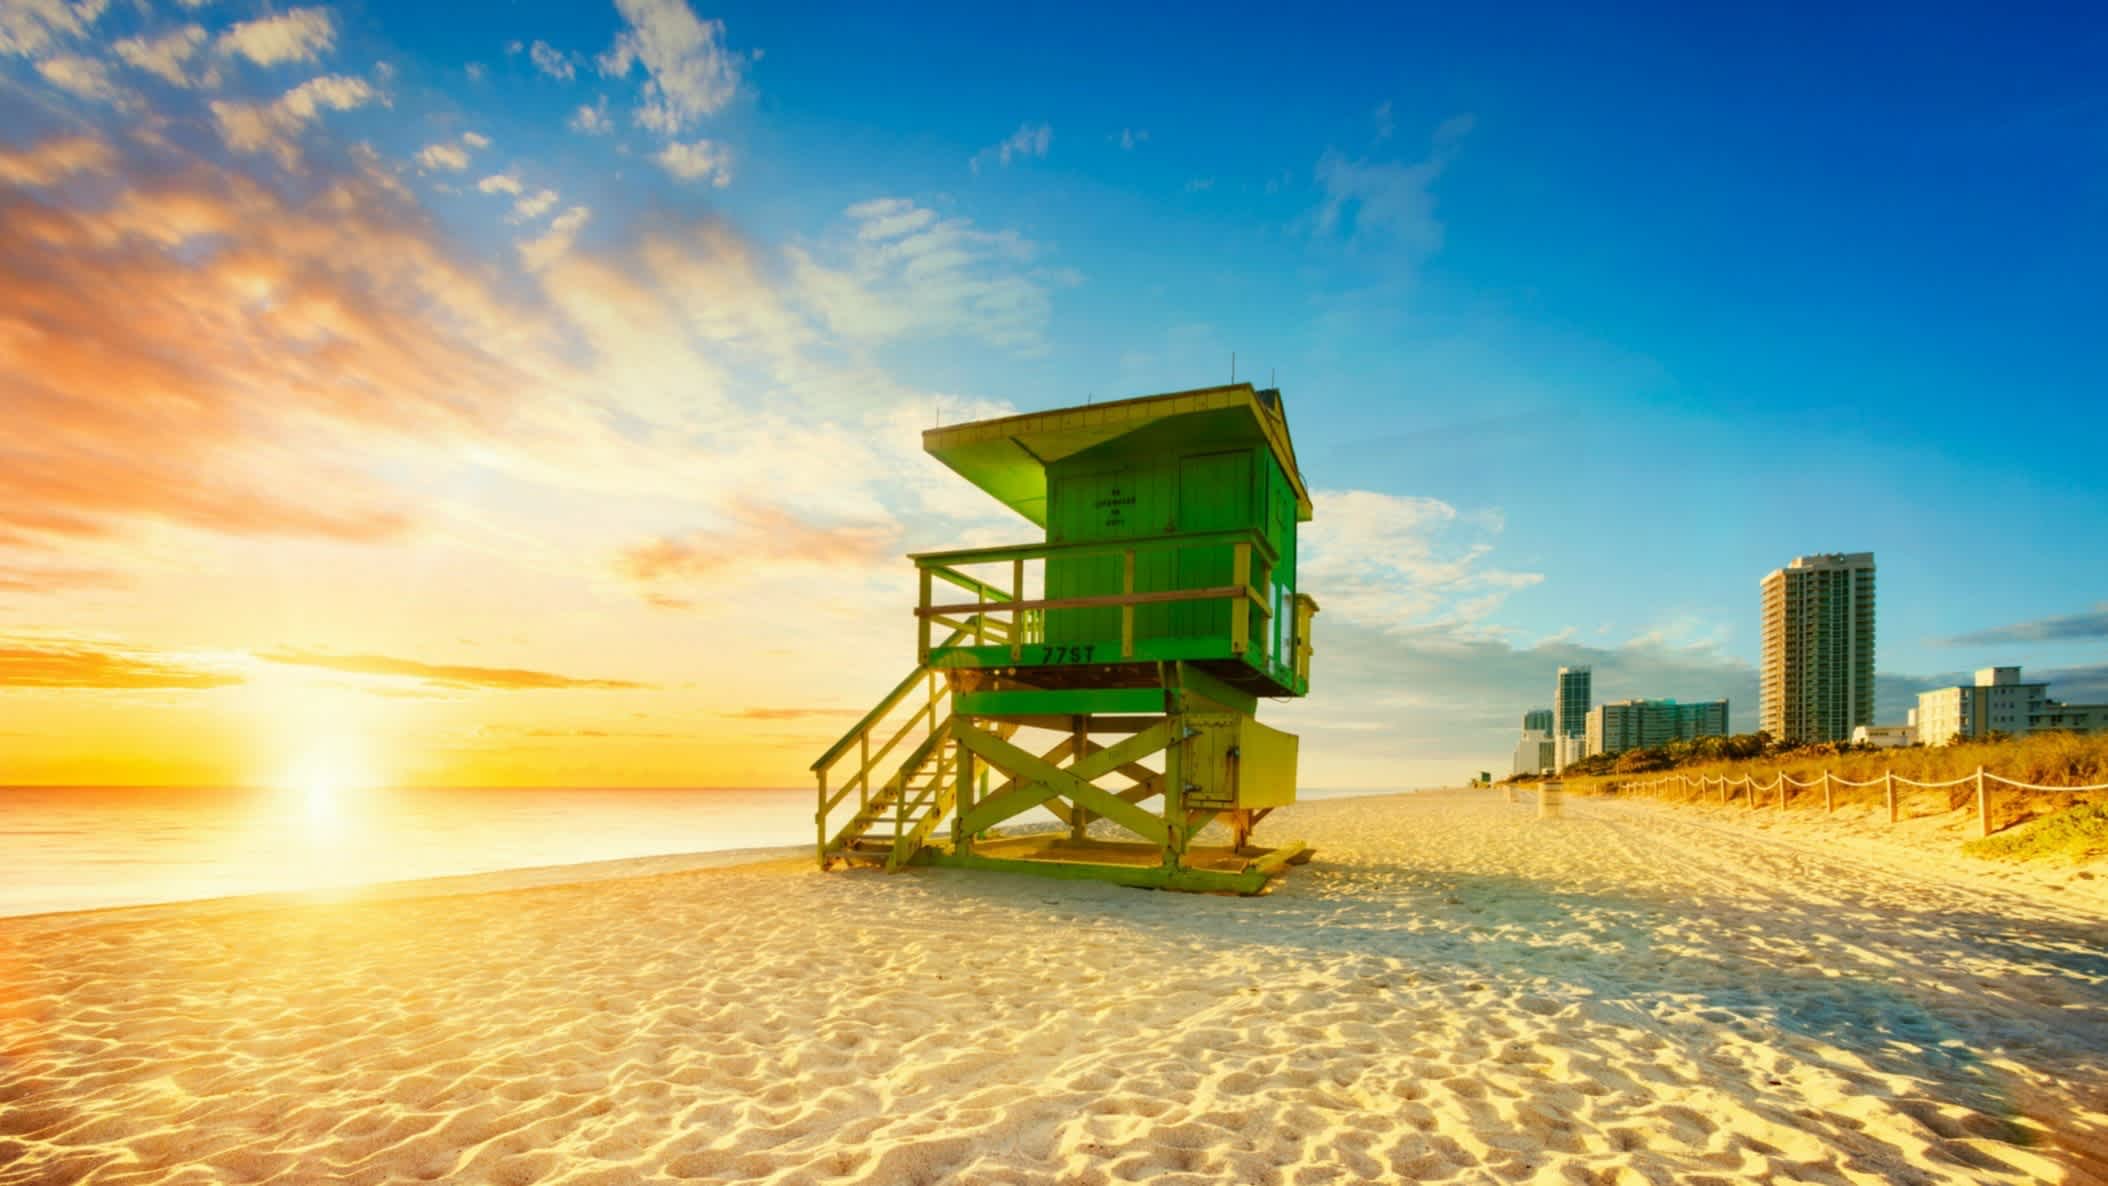 Der Strand South Beach, Miami Beach, Florida, USA bei farbenprächtigem Sonnenuntergang mit Blick auf einen grünen Wachturm sowie Hochhäusern im Hintergrund.